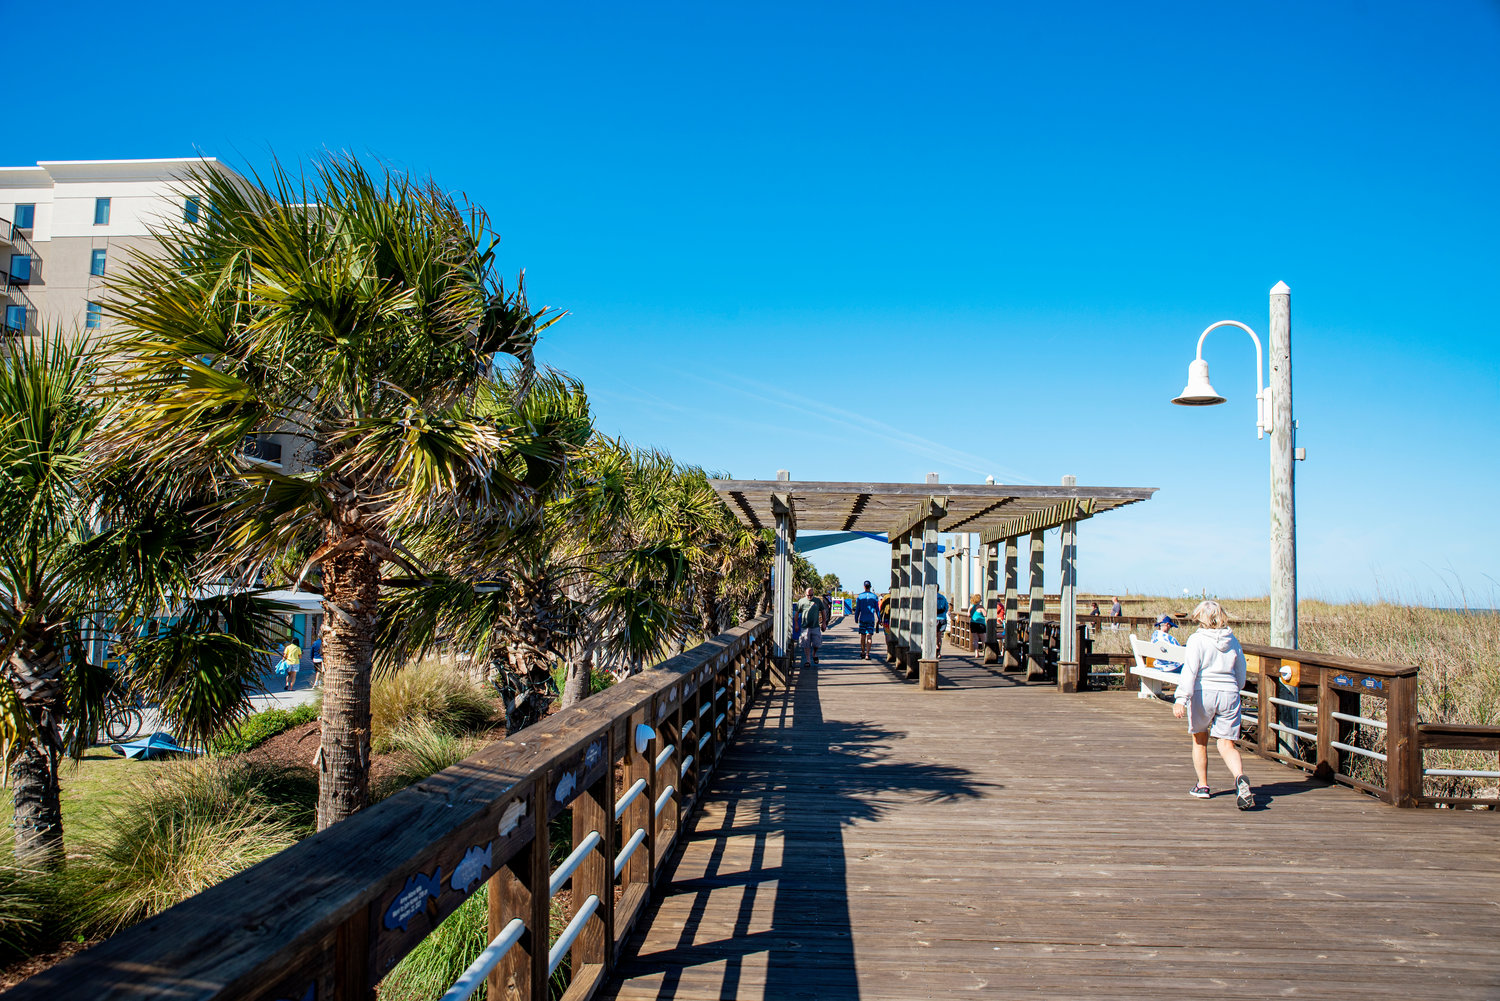 Carolina Beach boardwalk